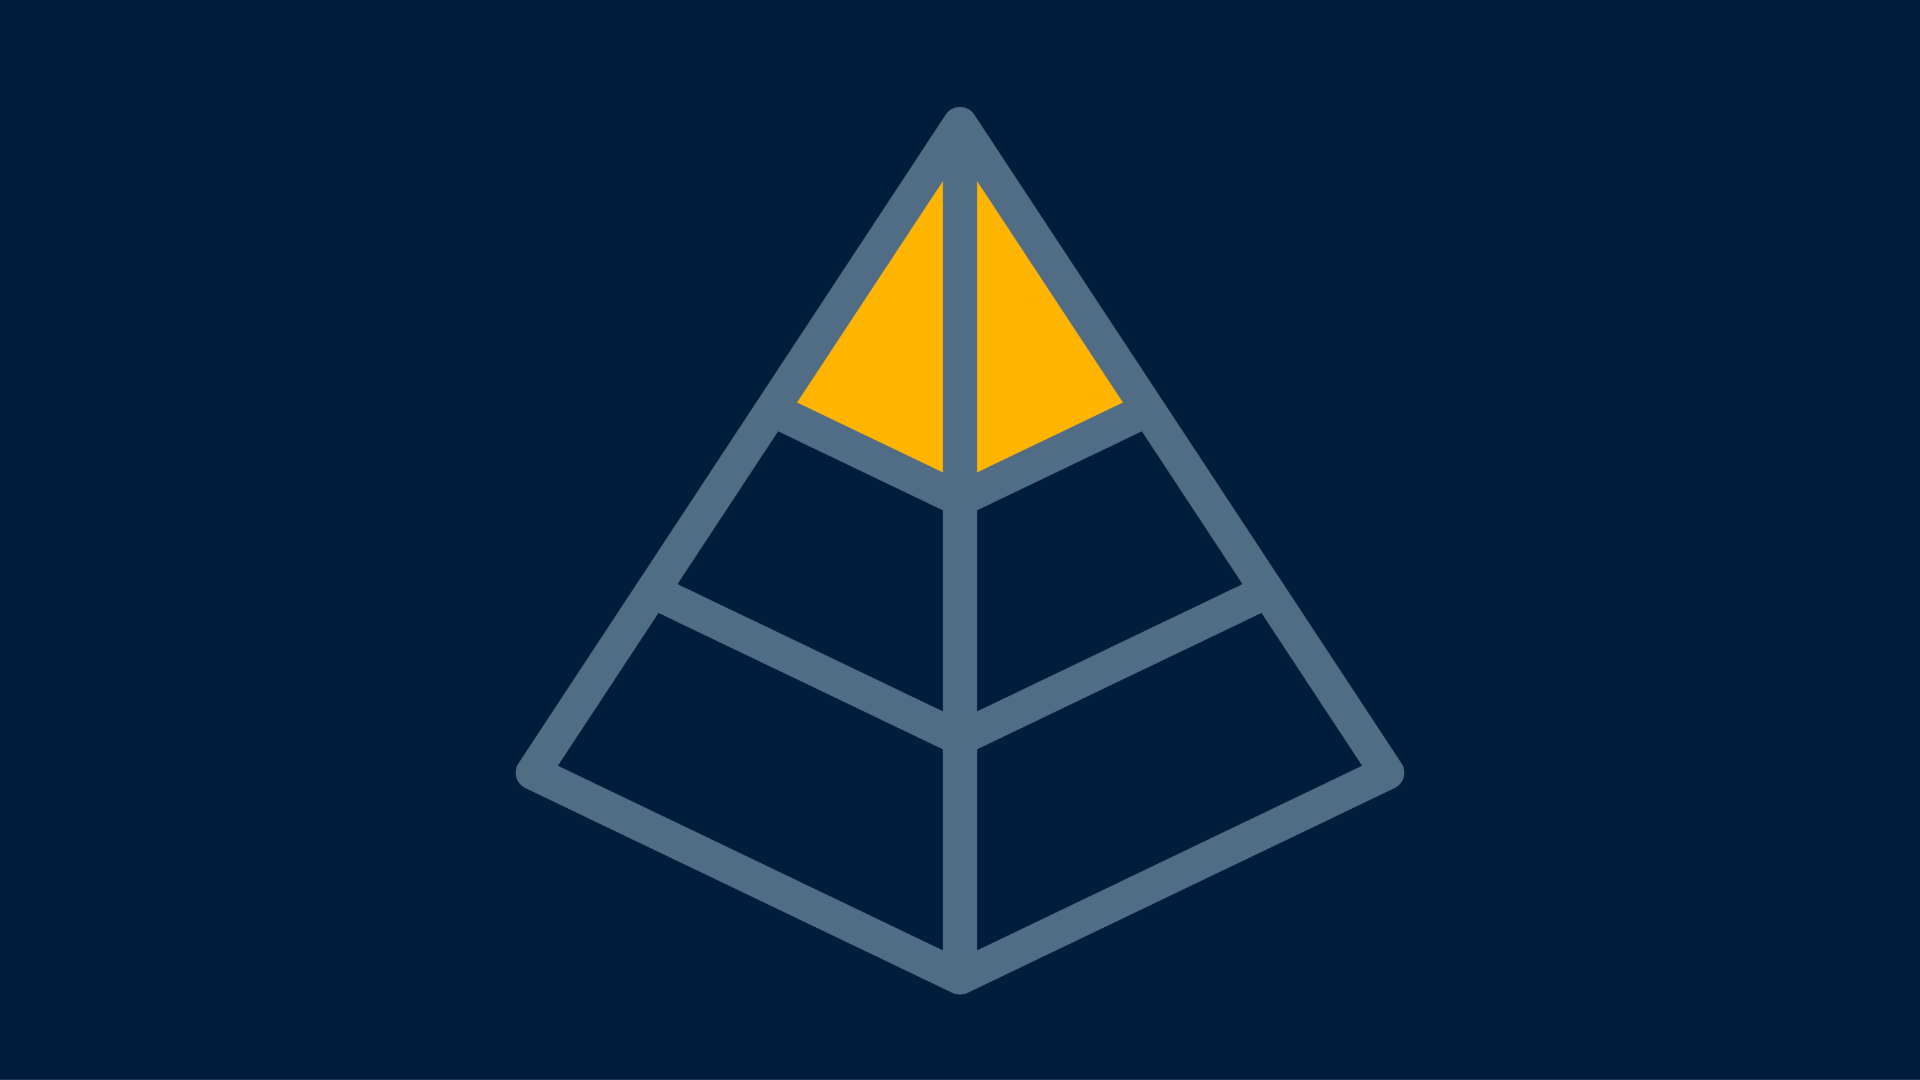 Piktogramm mit Pyramide | Personalisierte Conversion-Optimierung